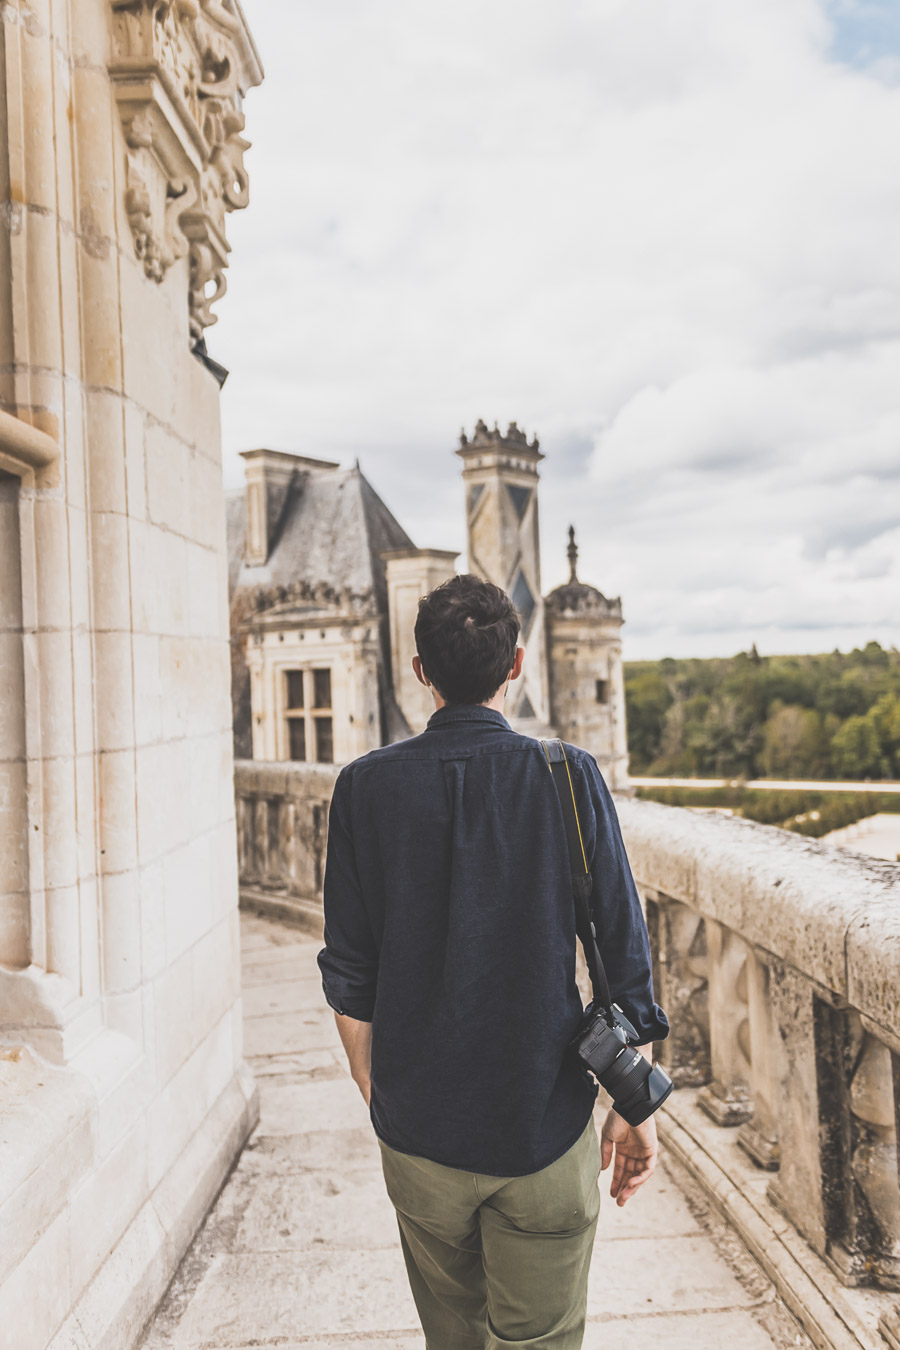 Visiter le château de Chambord